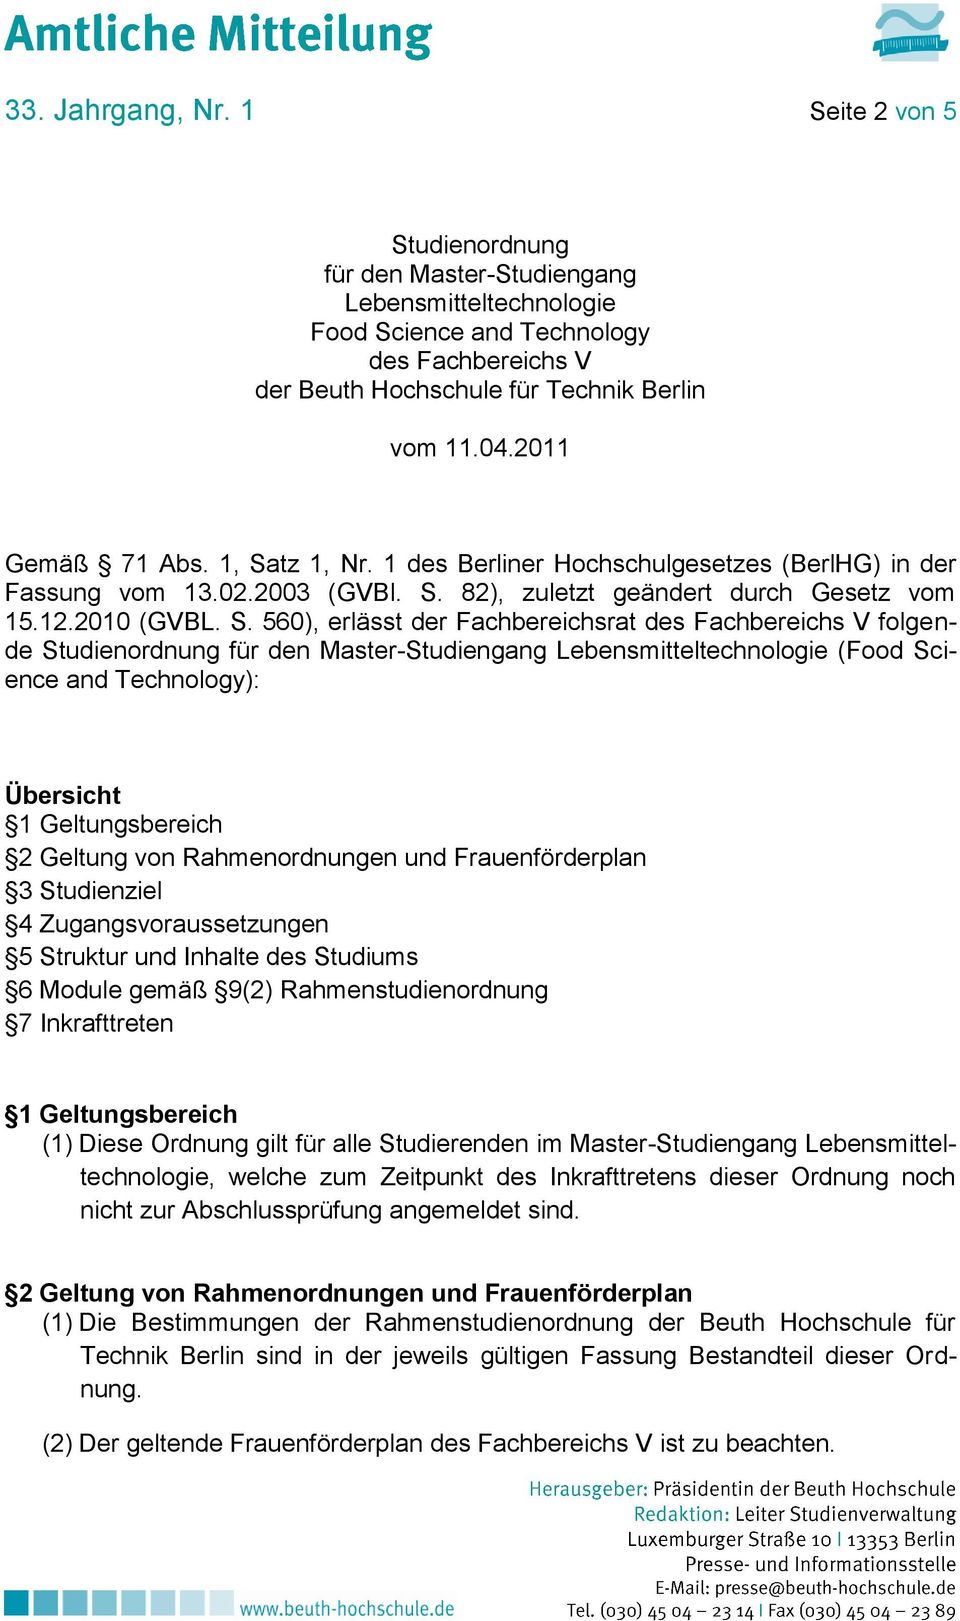 tz 1, Nr. 1 des Berliner Hochschulgesetzes (BerlHG) in der Fassung vom 13.02.2003 (GVBl. S.